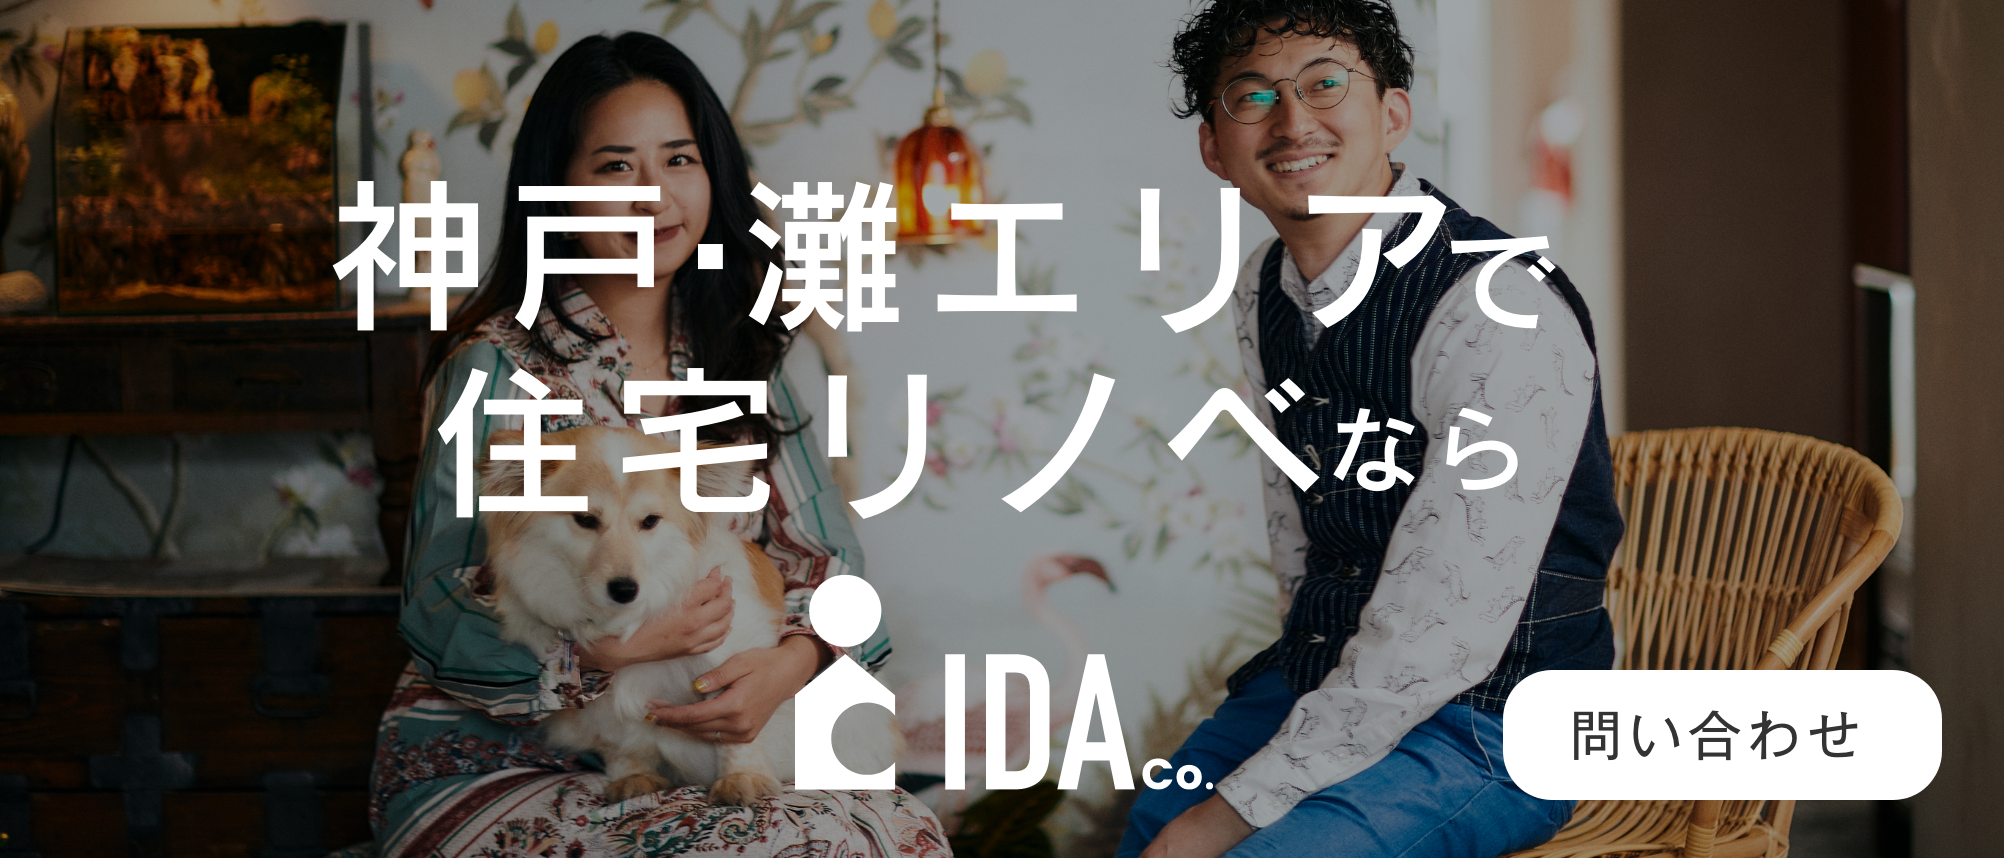 神戸・灘で住宅フルリノベーションならIDA Companyにお声がけください。